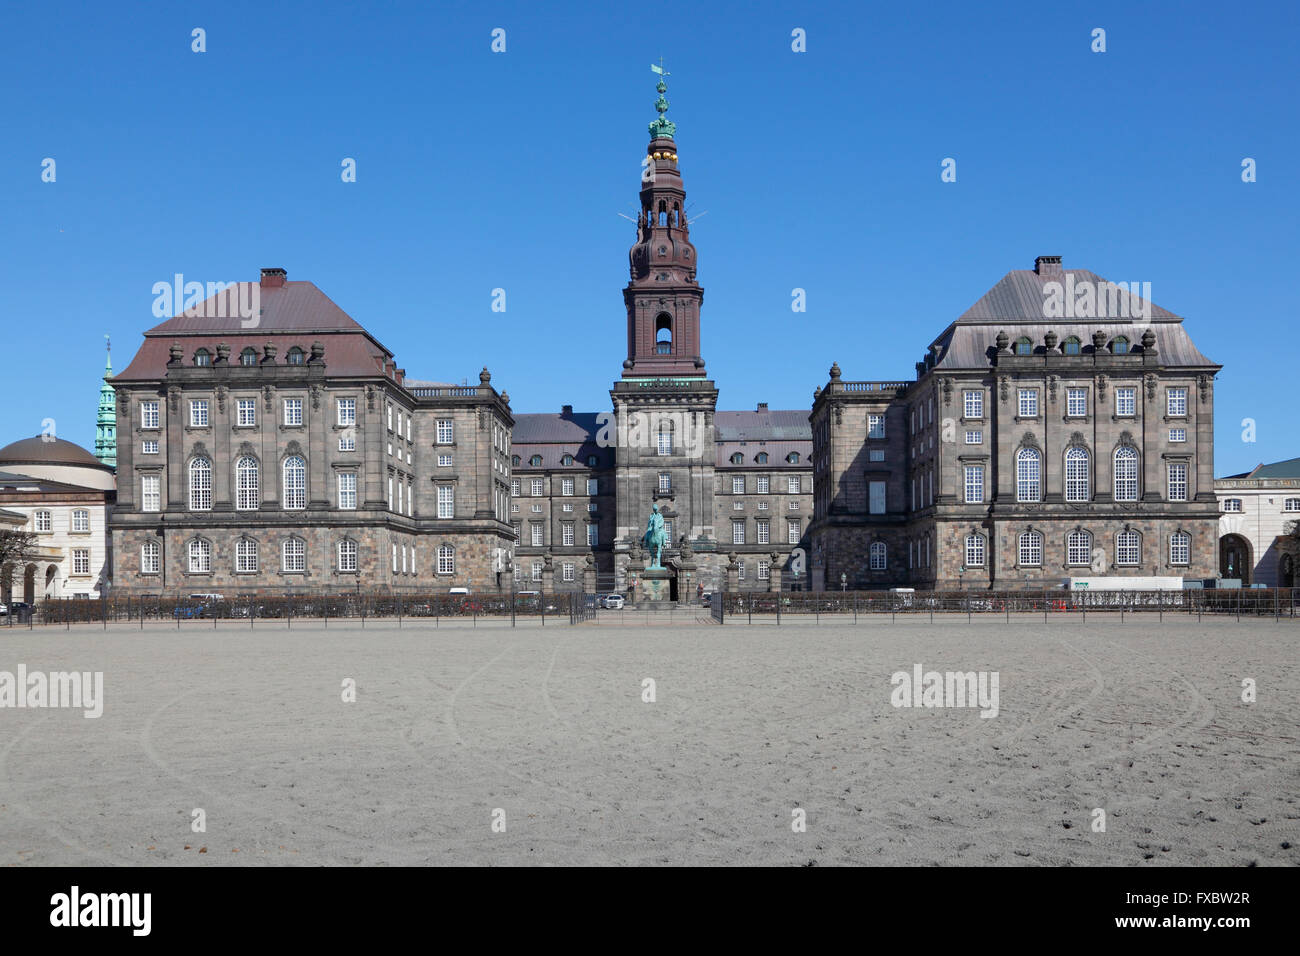 Christianborg Palace - Le bâtiment du parlement danois à Copenhague, Danemark - Accueil du Folketinget, vu de la cour intérieure Banque D'Images